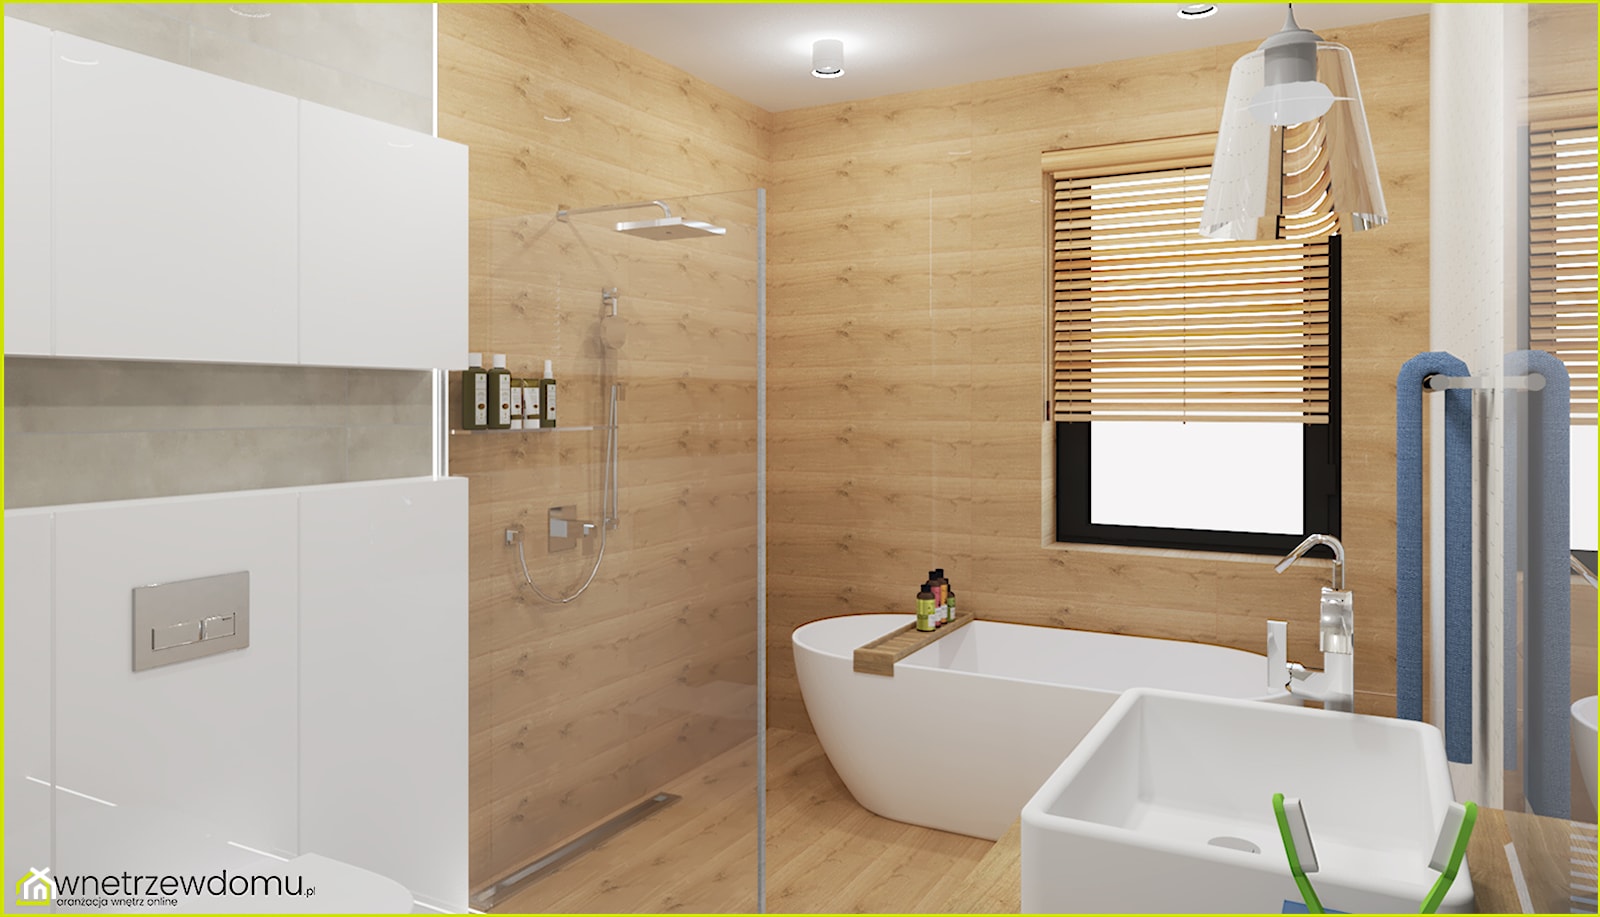 Łazienka - biel i drewno - zdjęcie od wnetrzewdomu - Homebook